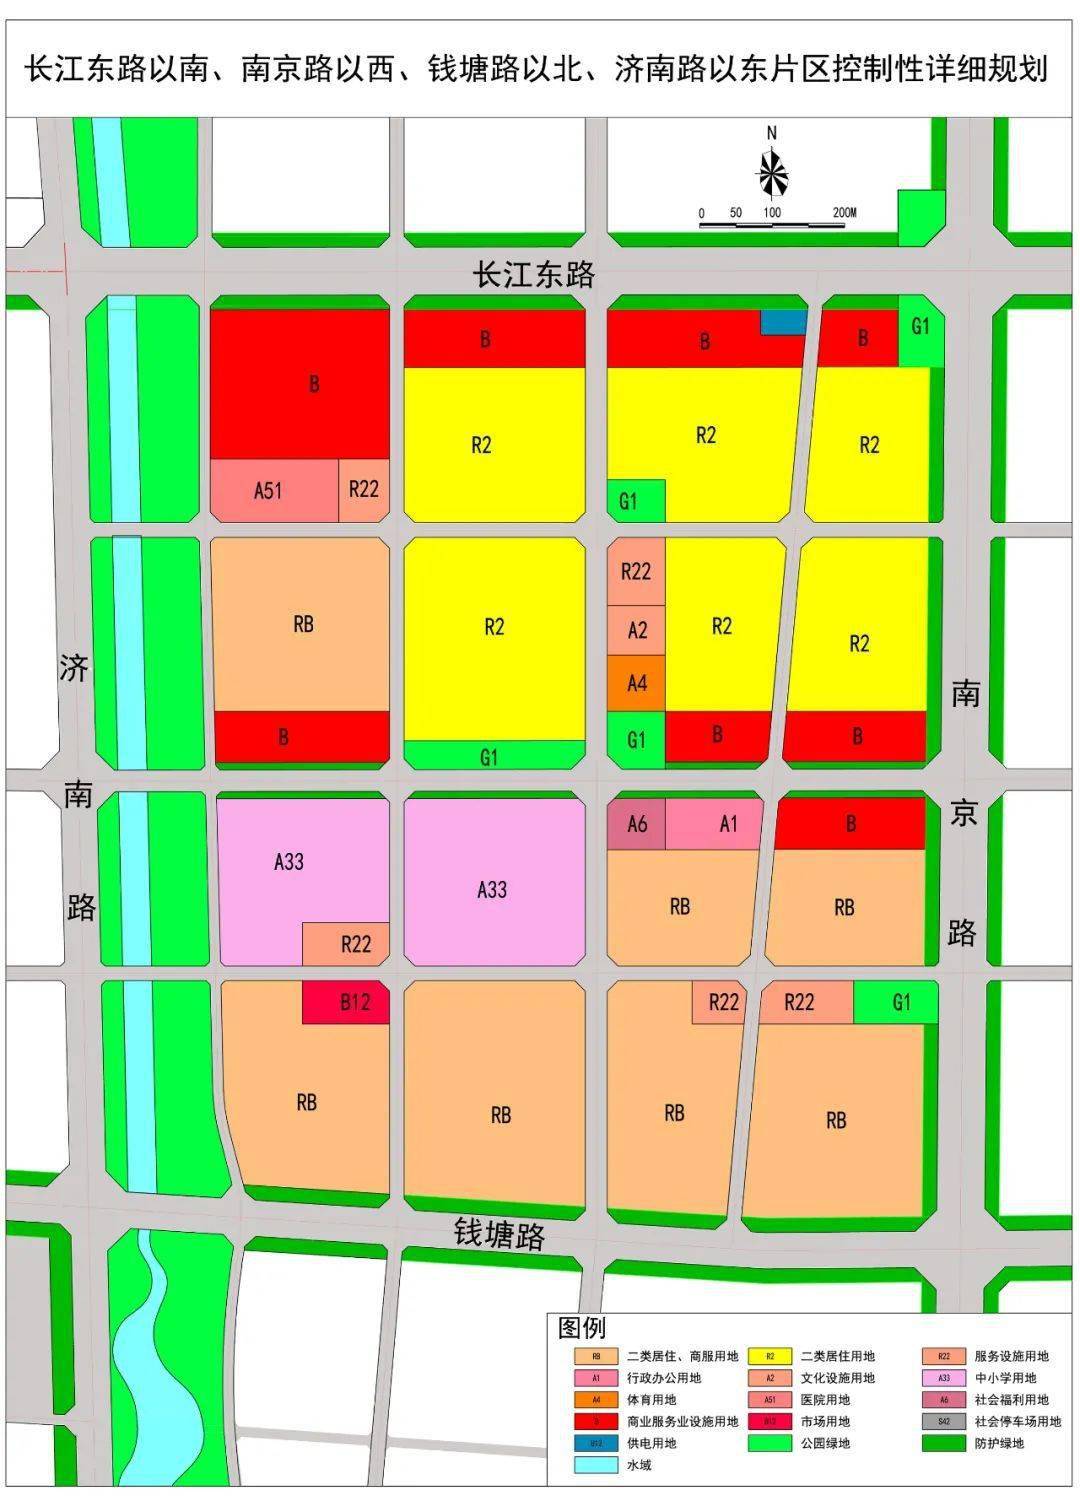 最新!菏泽城区这一片区详细规划出炉!包含居住,商业,中小学用地!